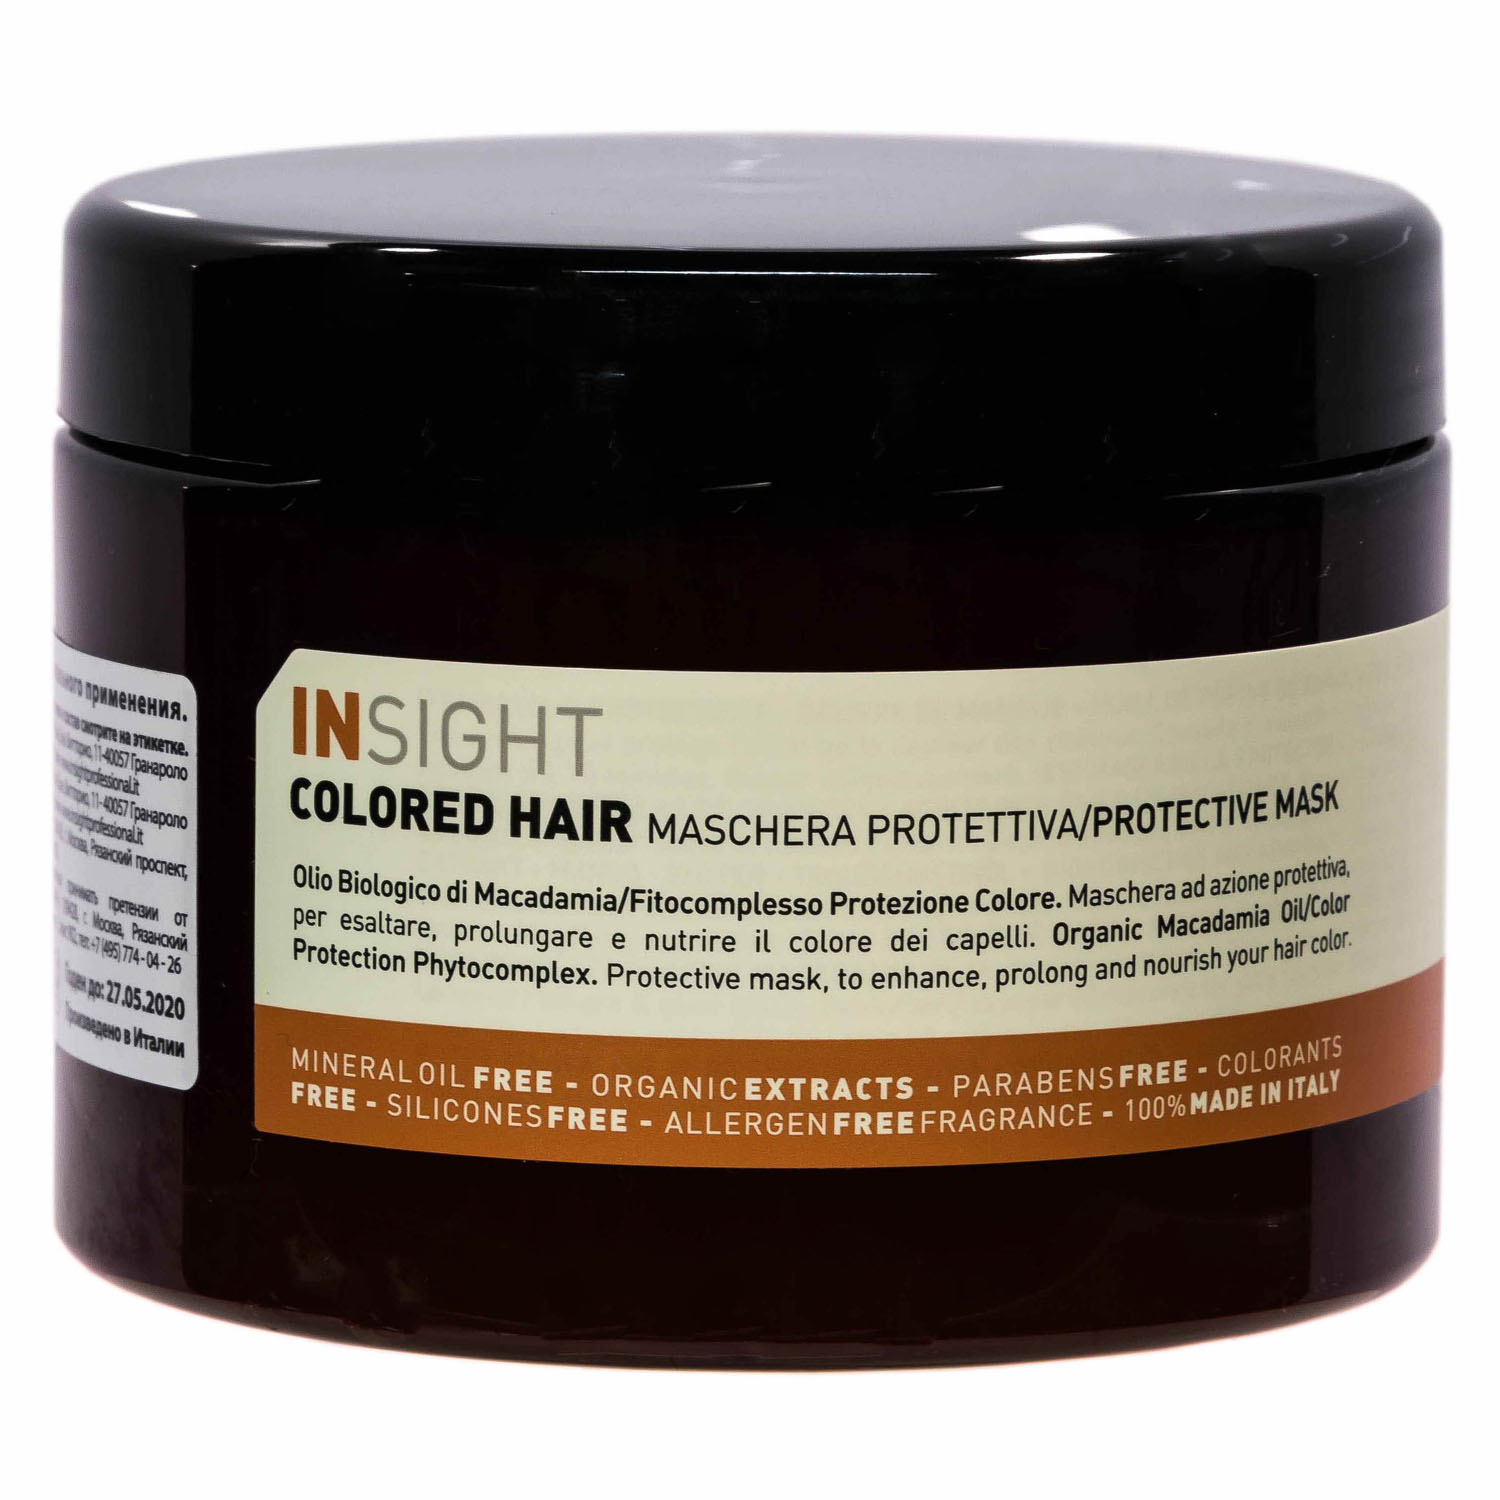 Insight Professional Защитная маска для окрашенных волос, 500 мл (Insight Professional, Colored Hair)